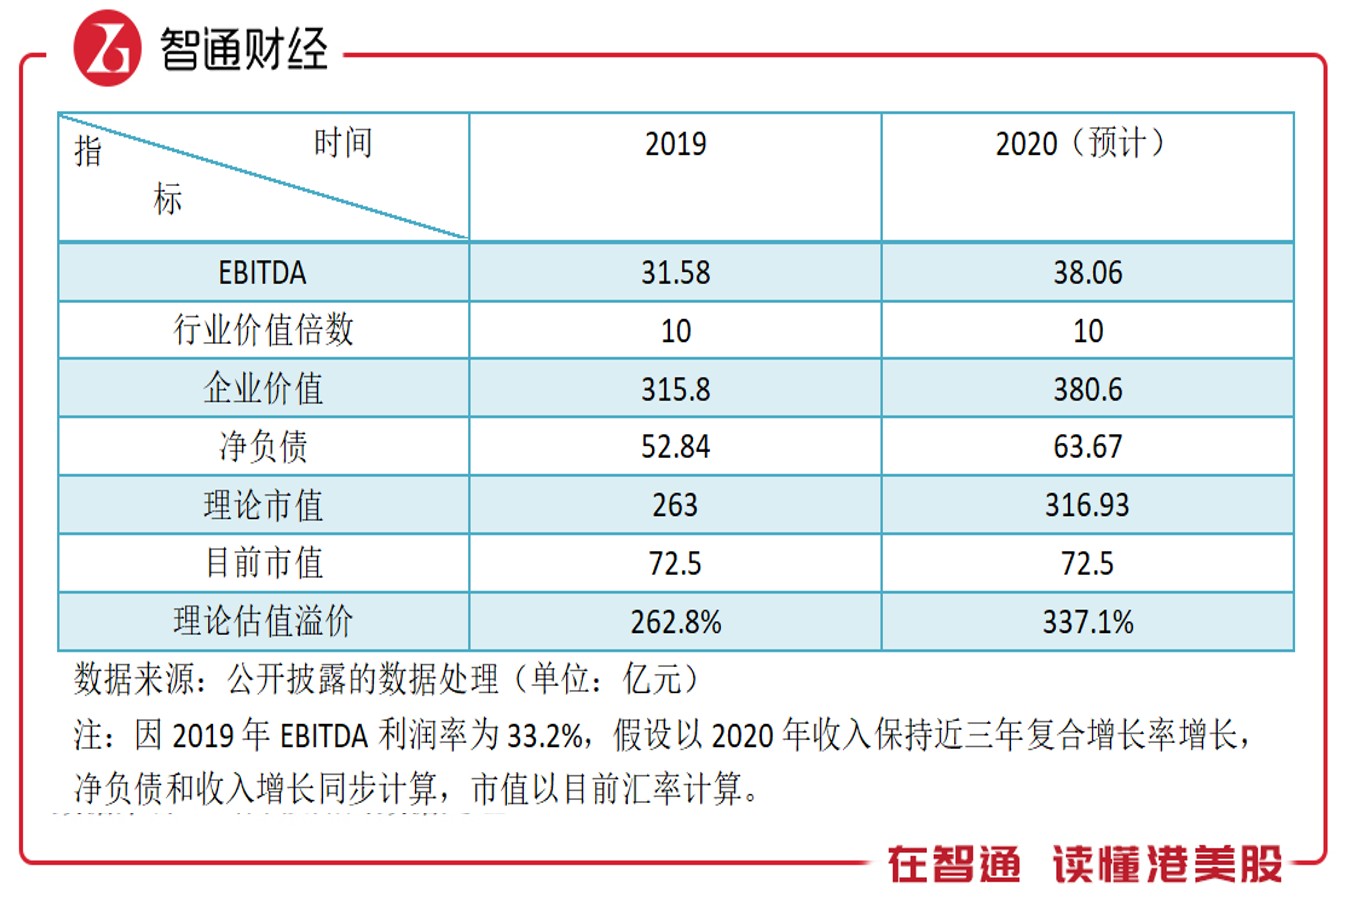 業績穩健成長 估值遠低於行業 德信中國迎來價值回歸